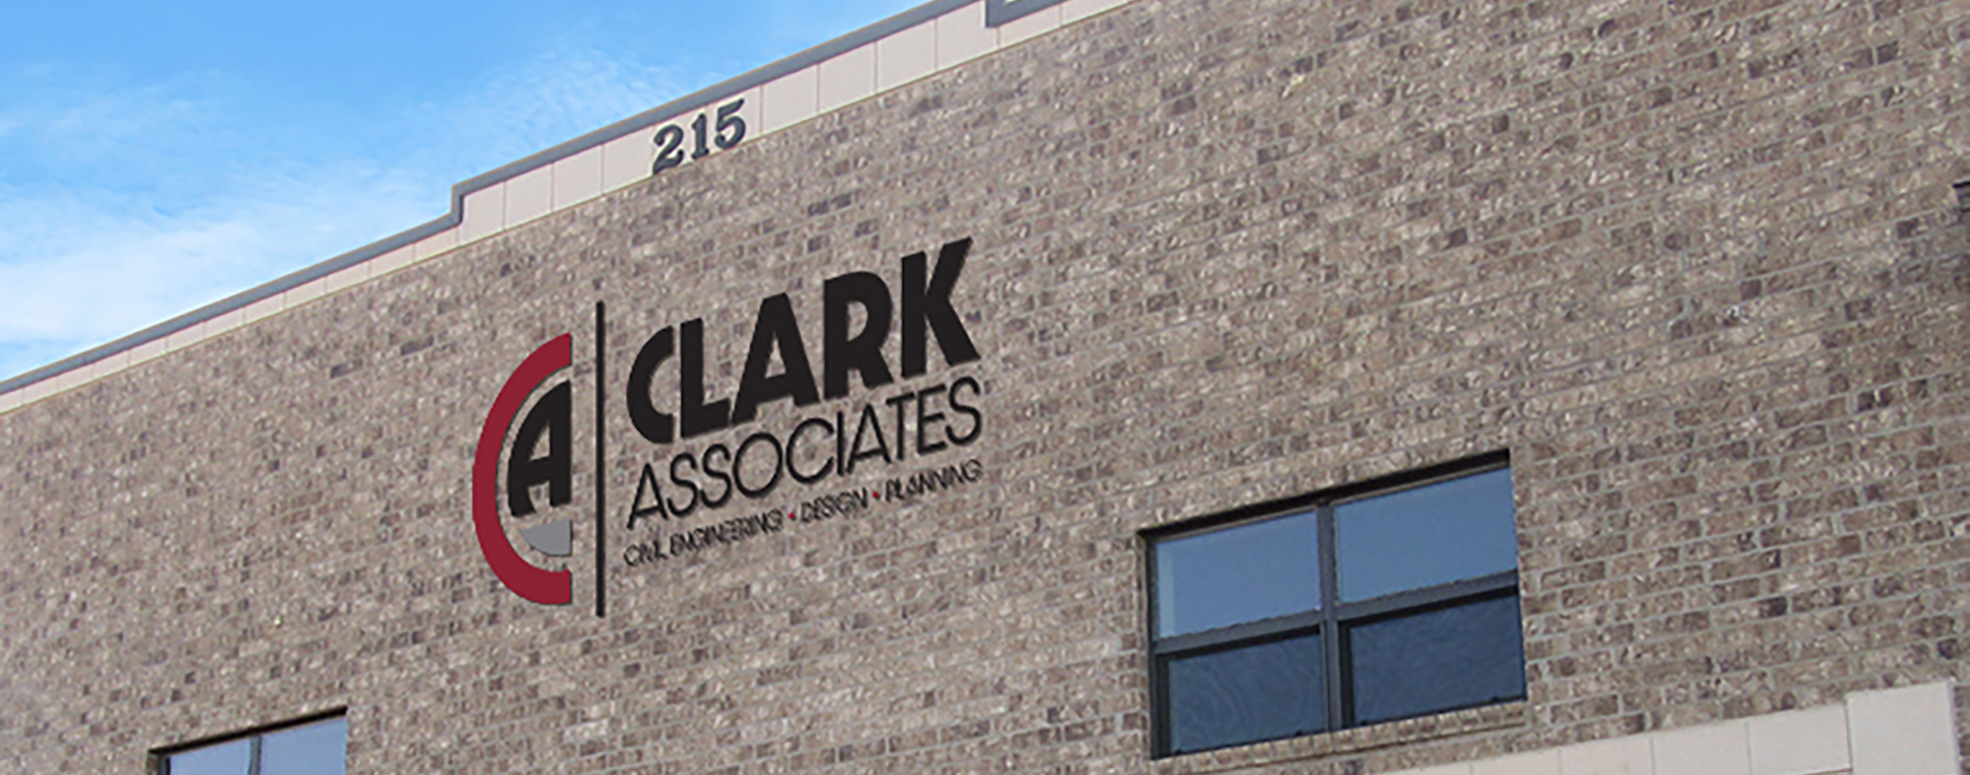 Clark Associates Engineering 